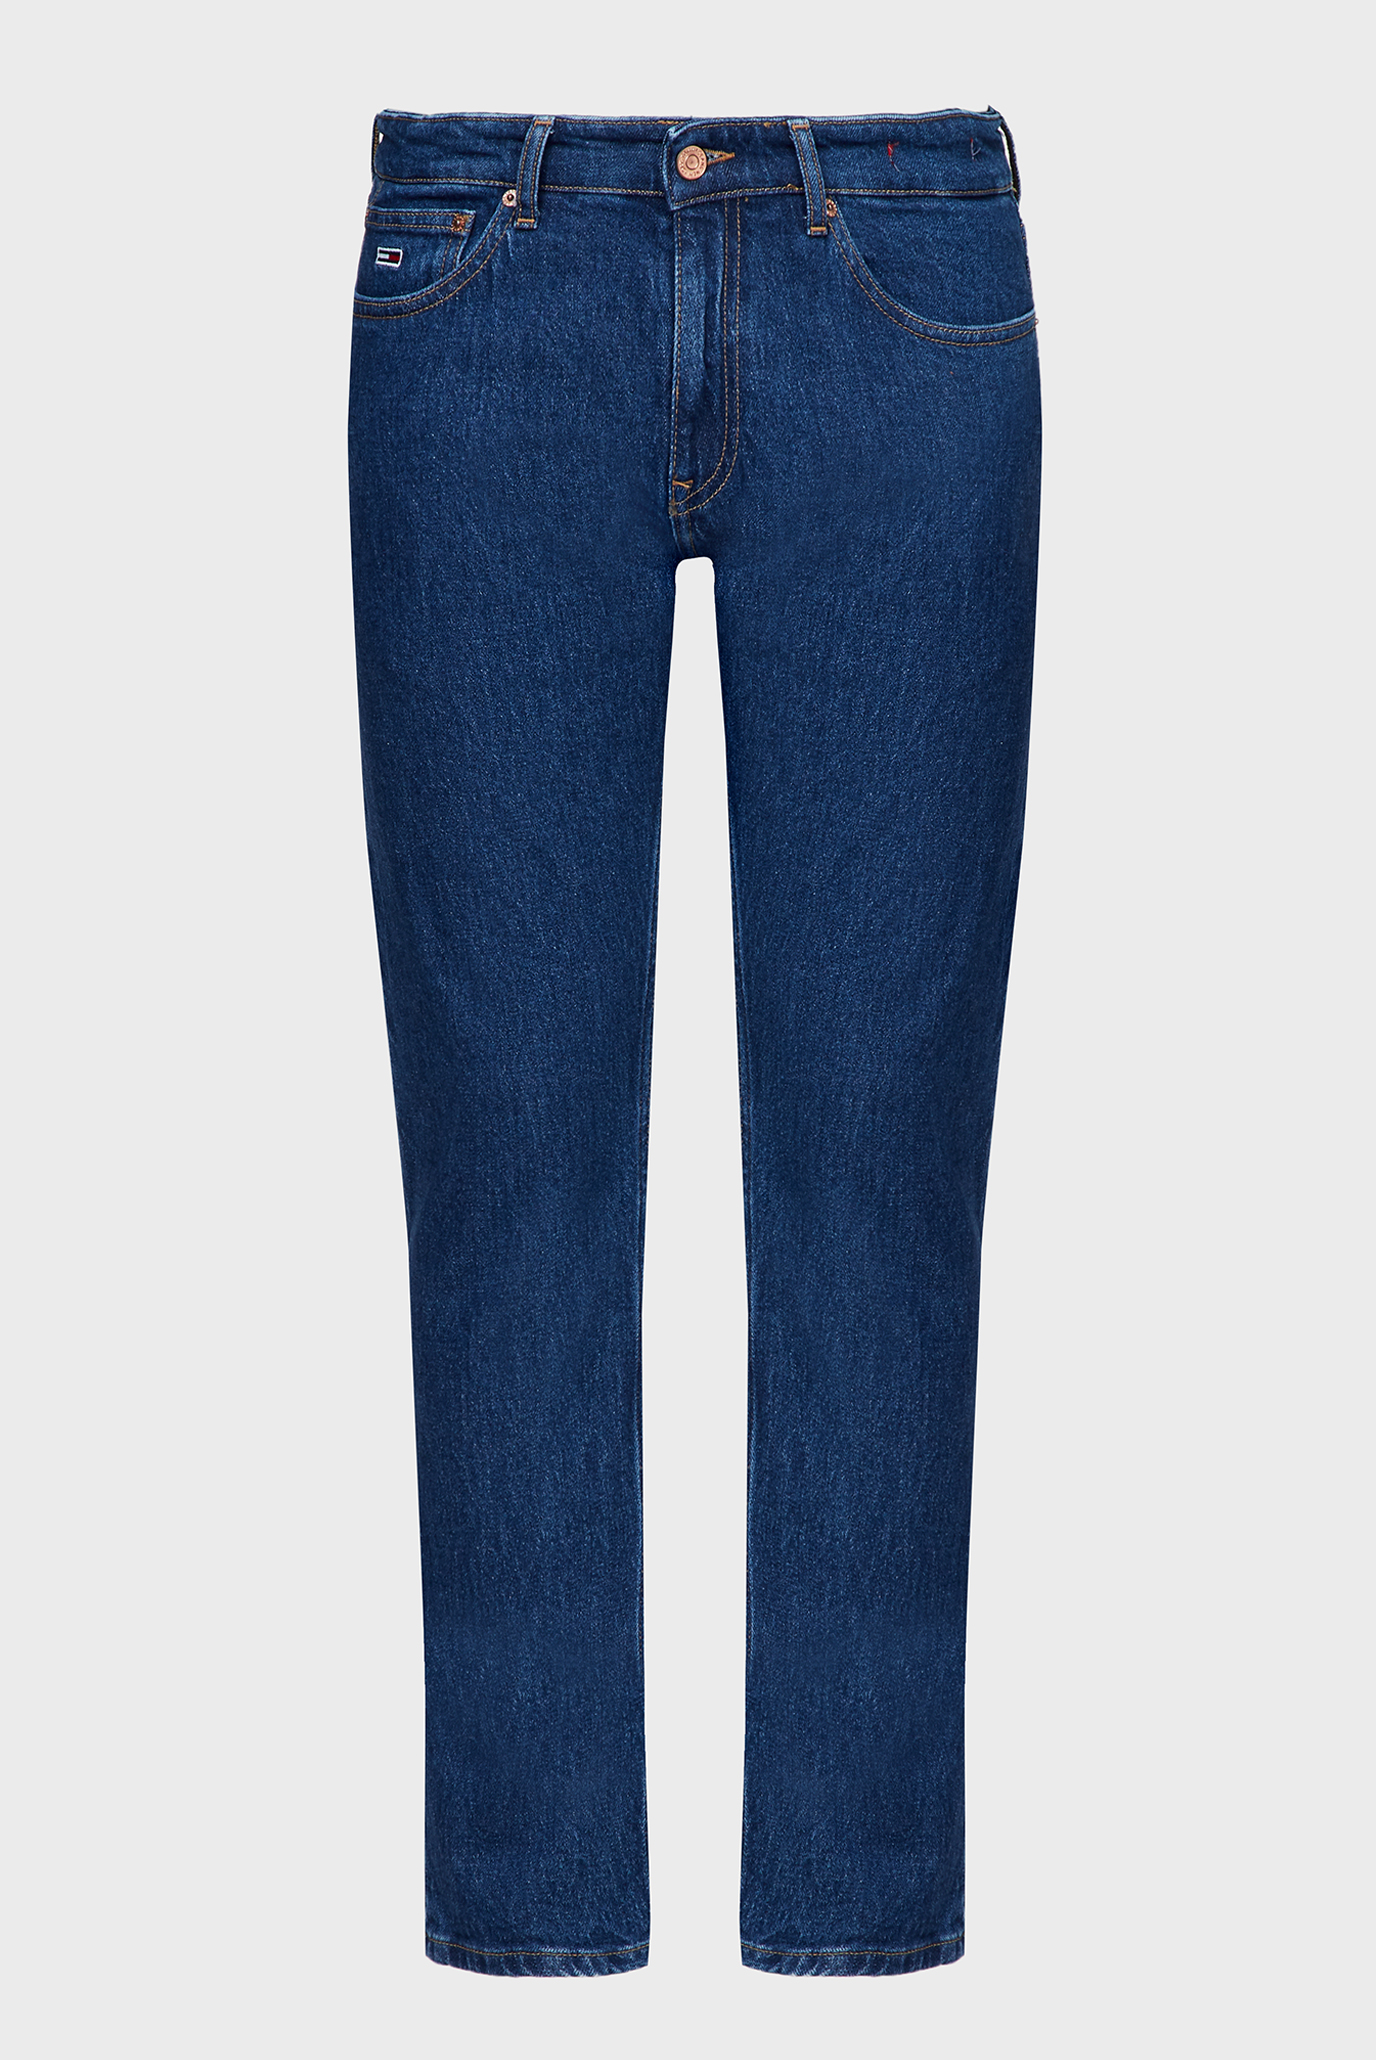 Мужские синие джинсы SCANTON SLIM CG4158 1